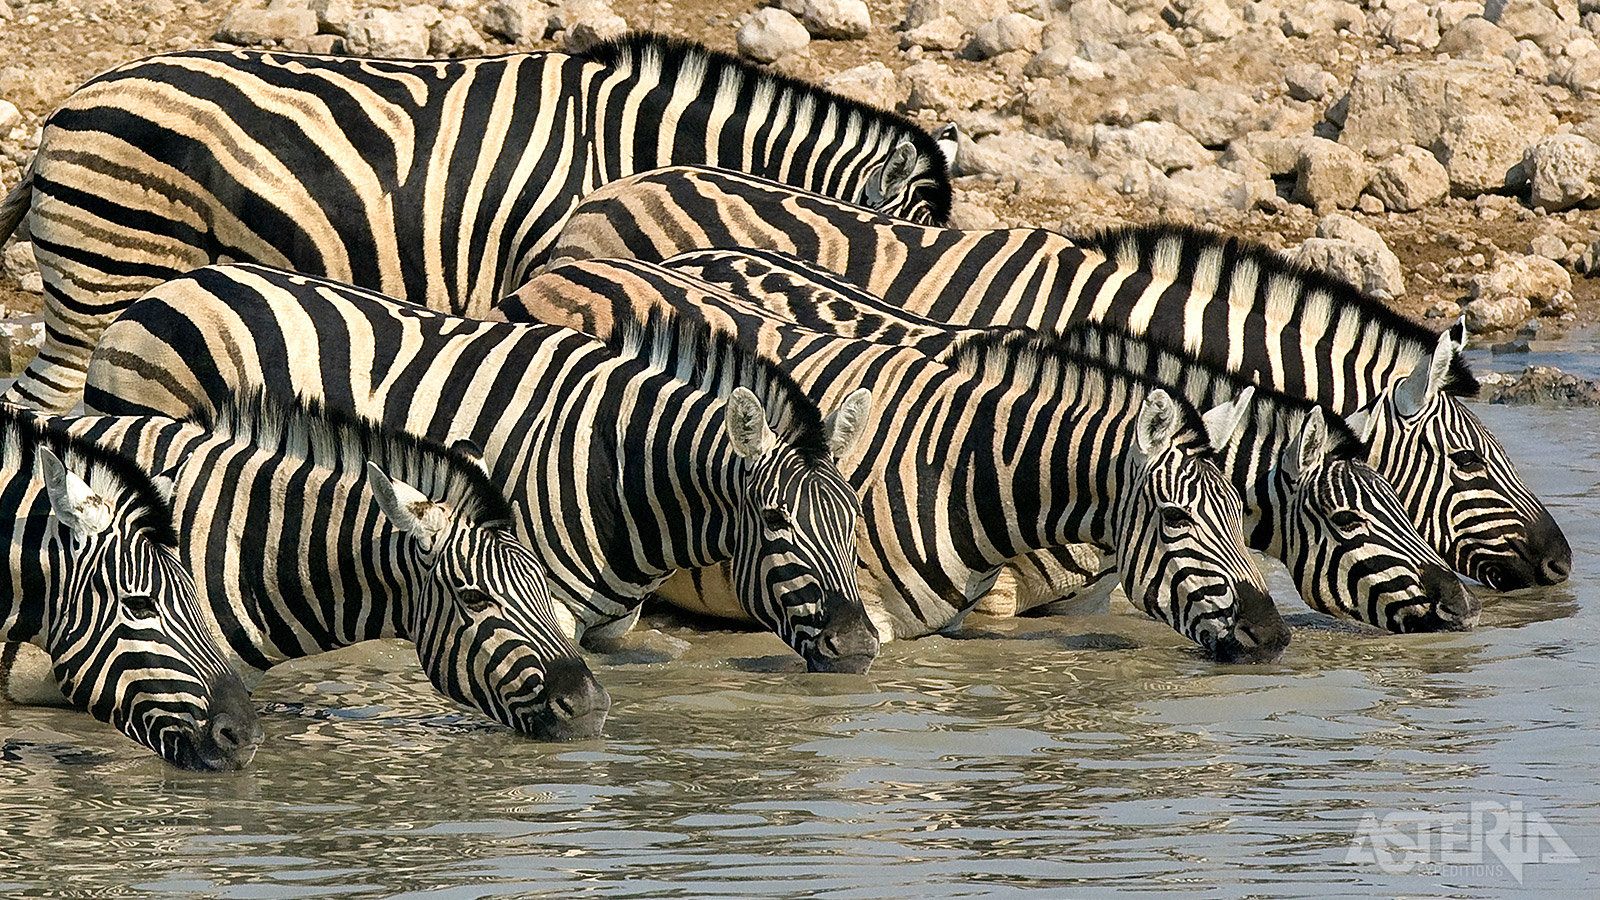 Het Ongava Private Game Reserve aan de rand van het zuidwestelijke deel van Etosha National Park